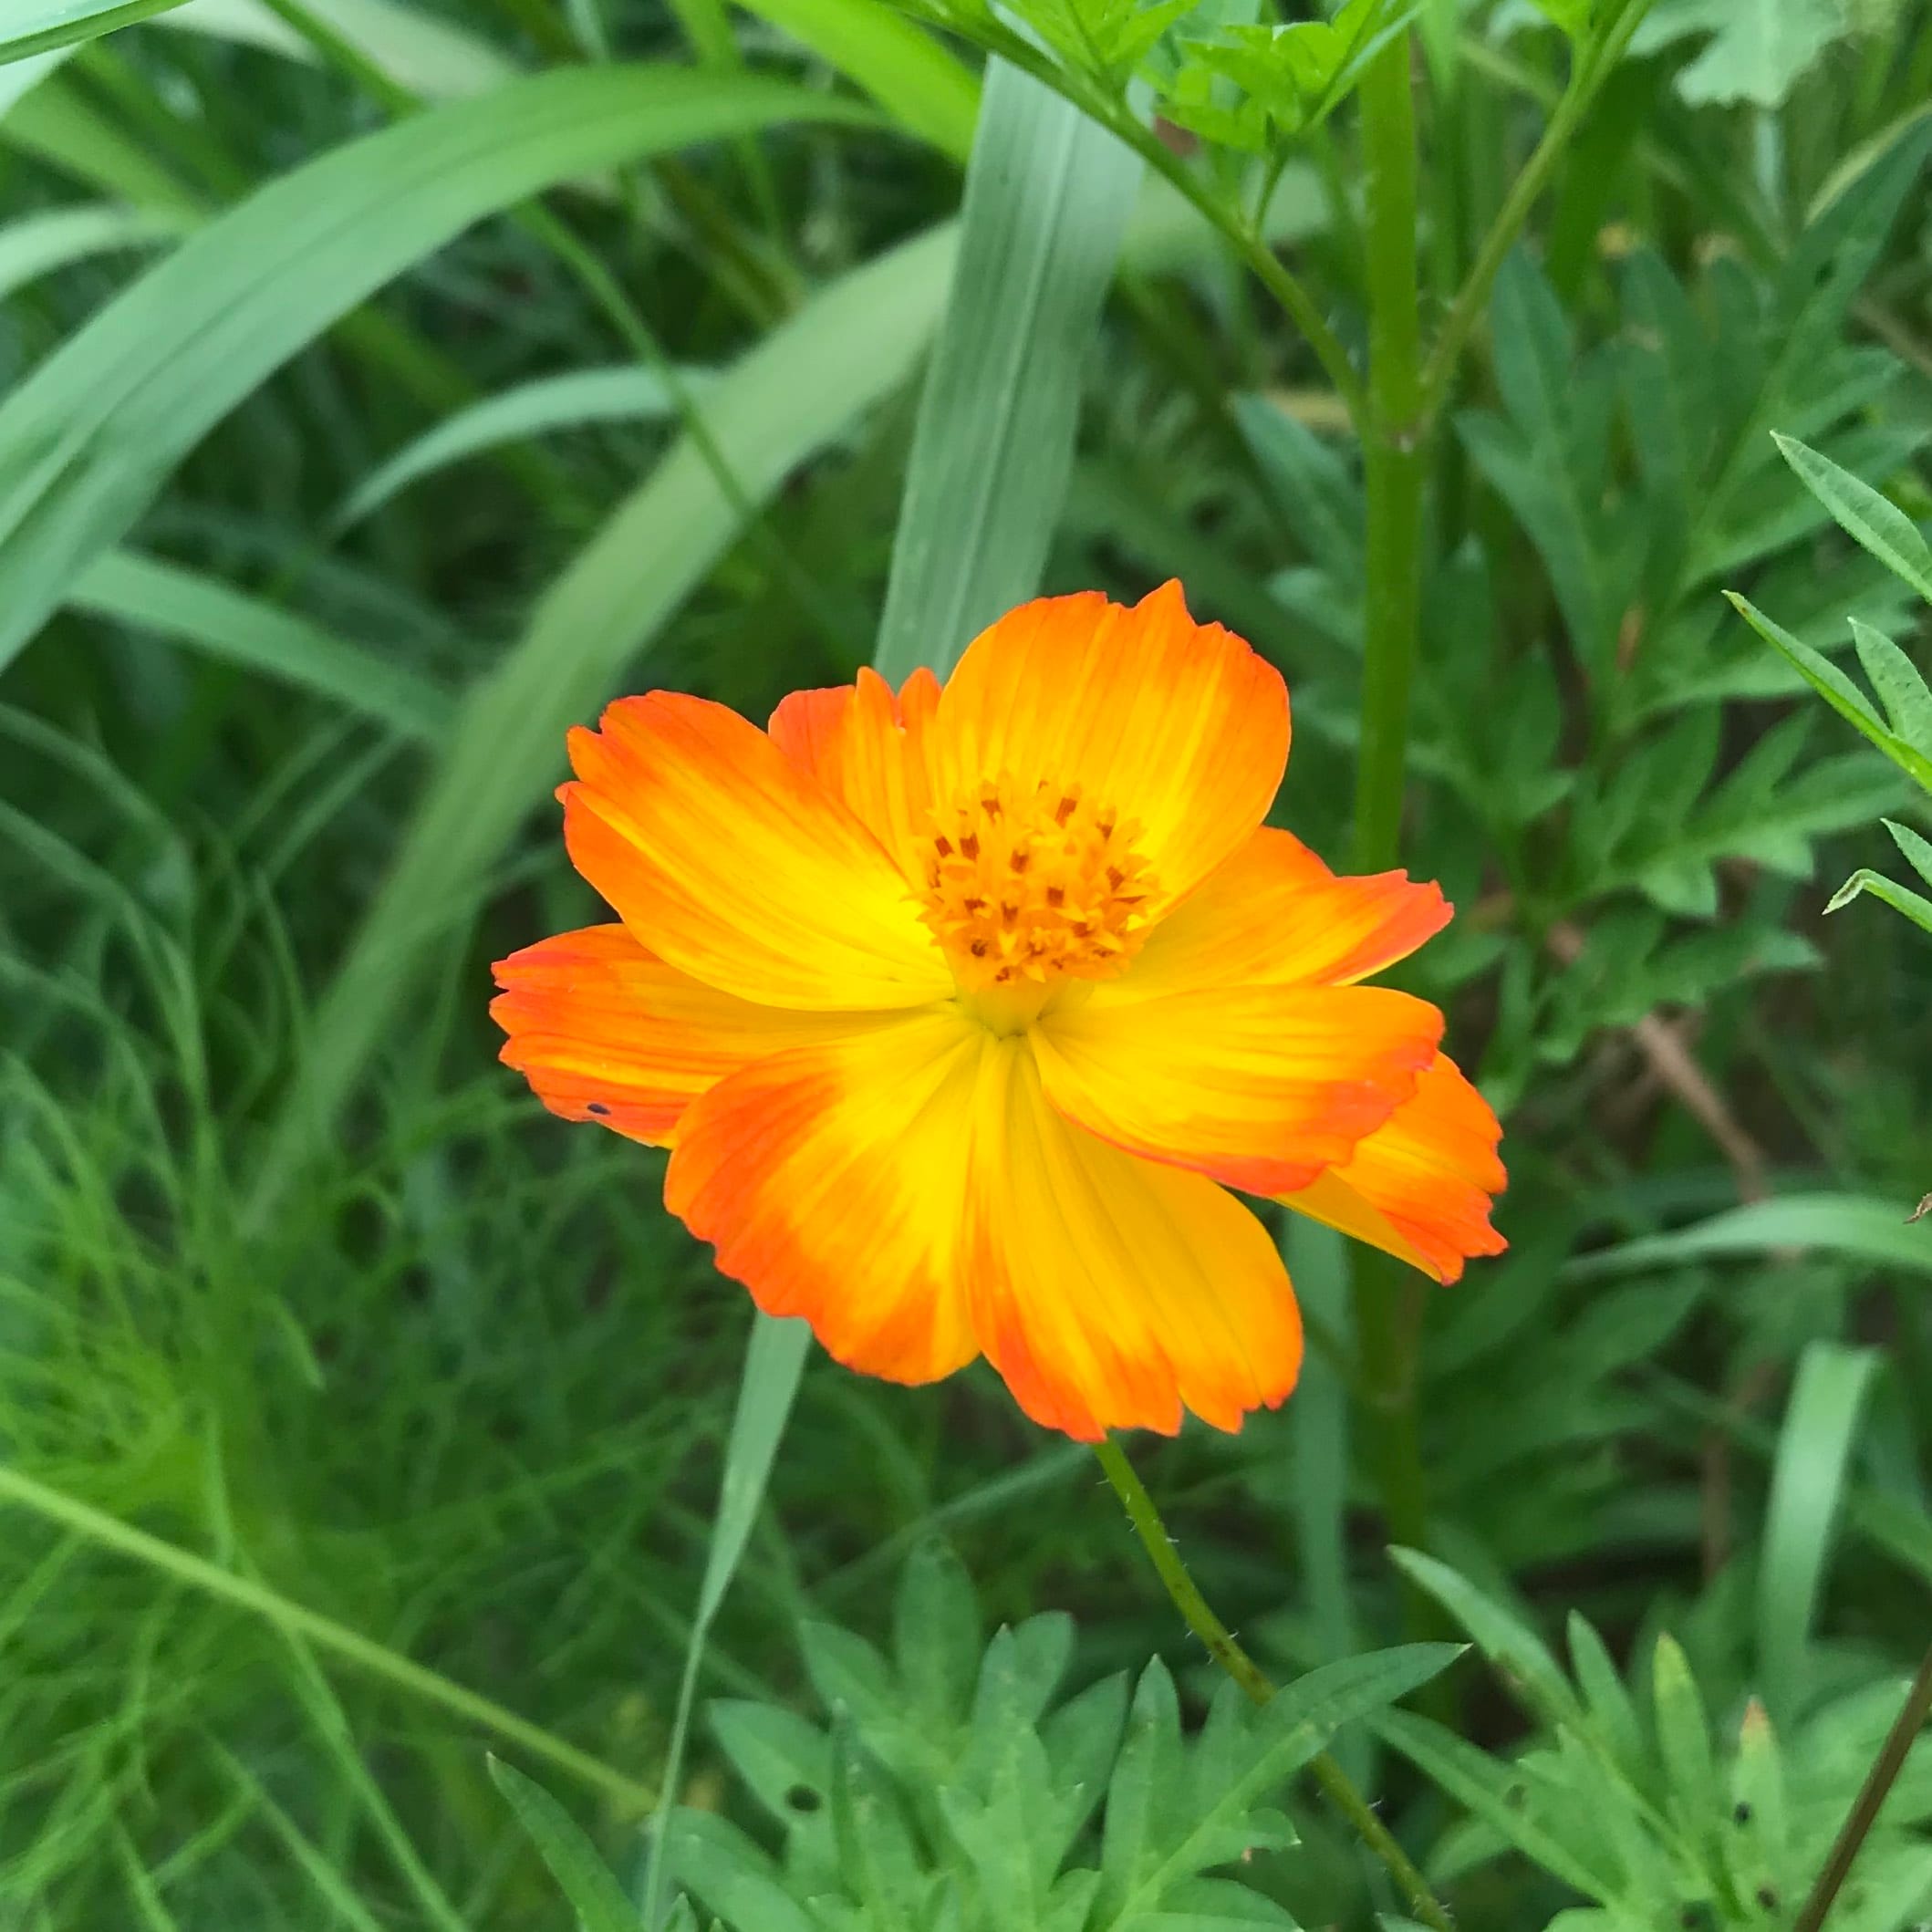 A single orange flower in a field.